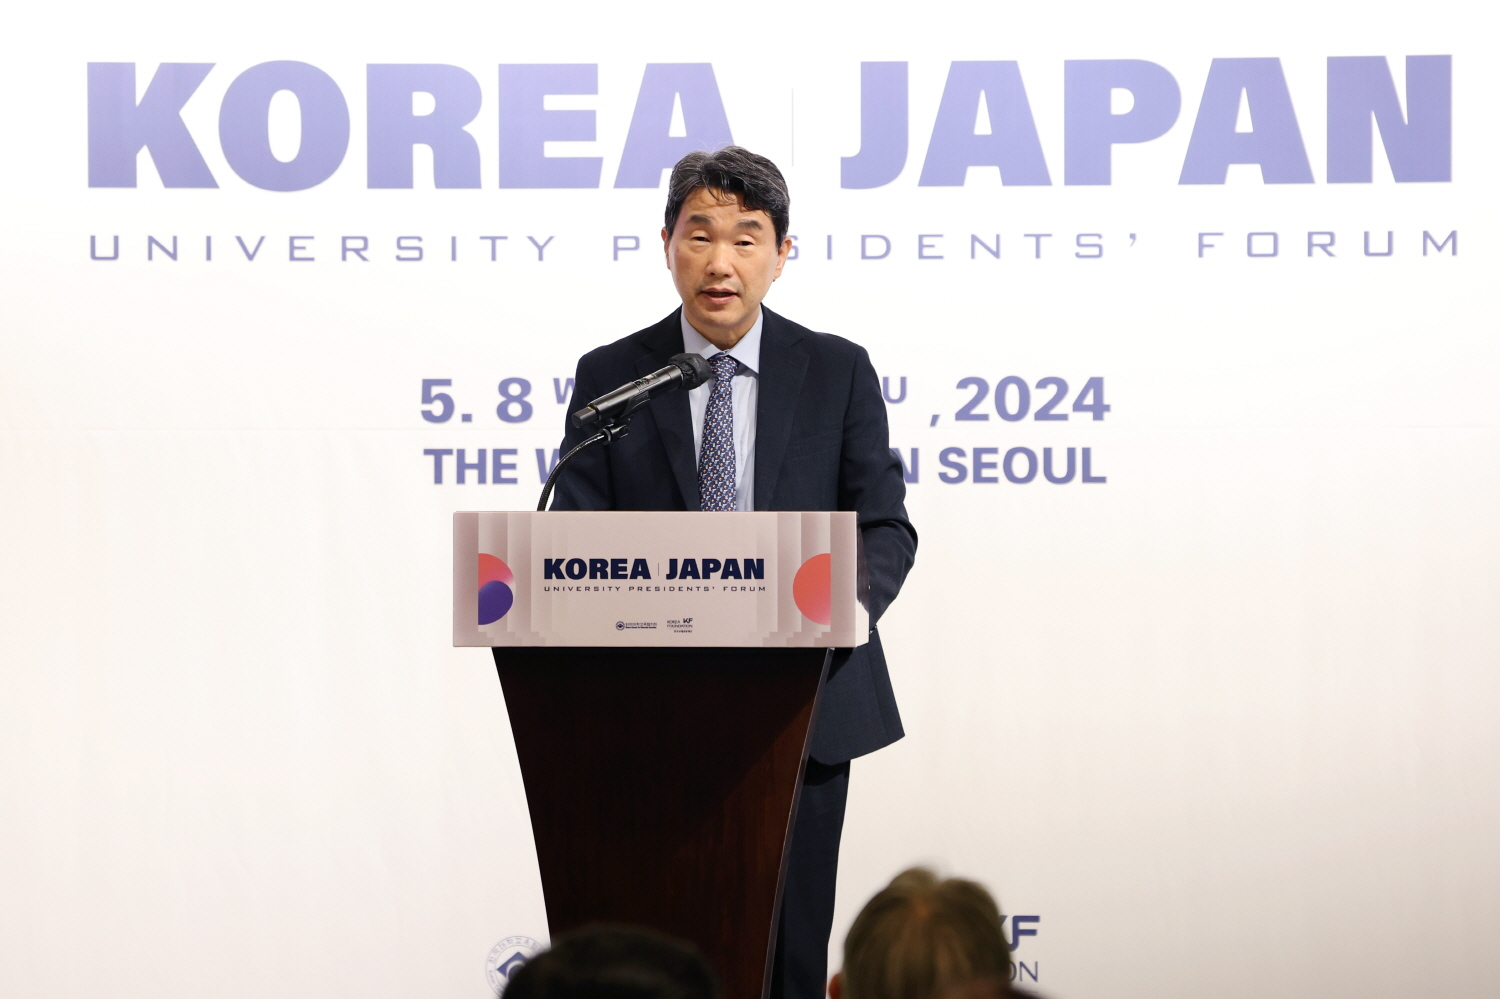 이주호 부총리 겸 교육부장관은 5월 9일(목), 웨스틴 조선 서울호텔에서 열린 「한일 대학총장 포럼」에 참석했다.